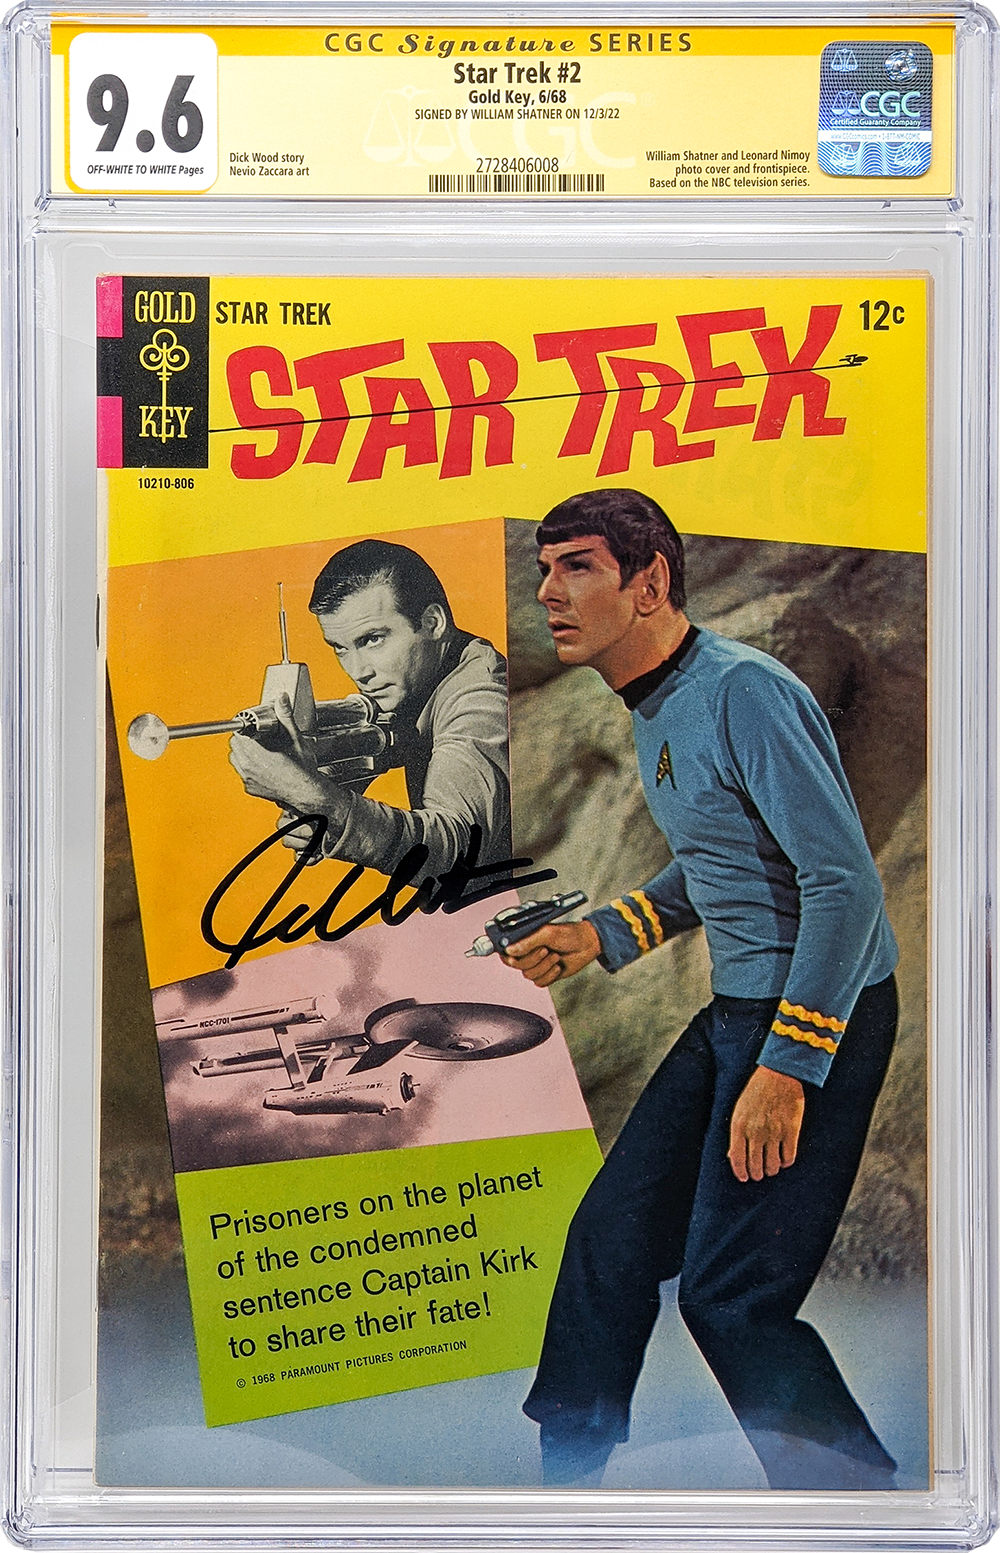 Star Trek #2 Gold Key CGC Signature Series 9.6 William Shatner